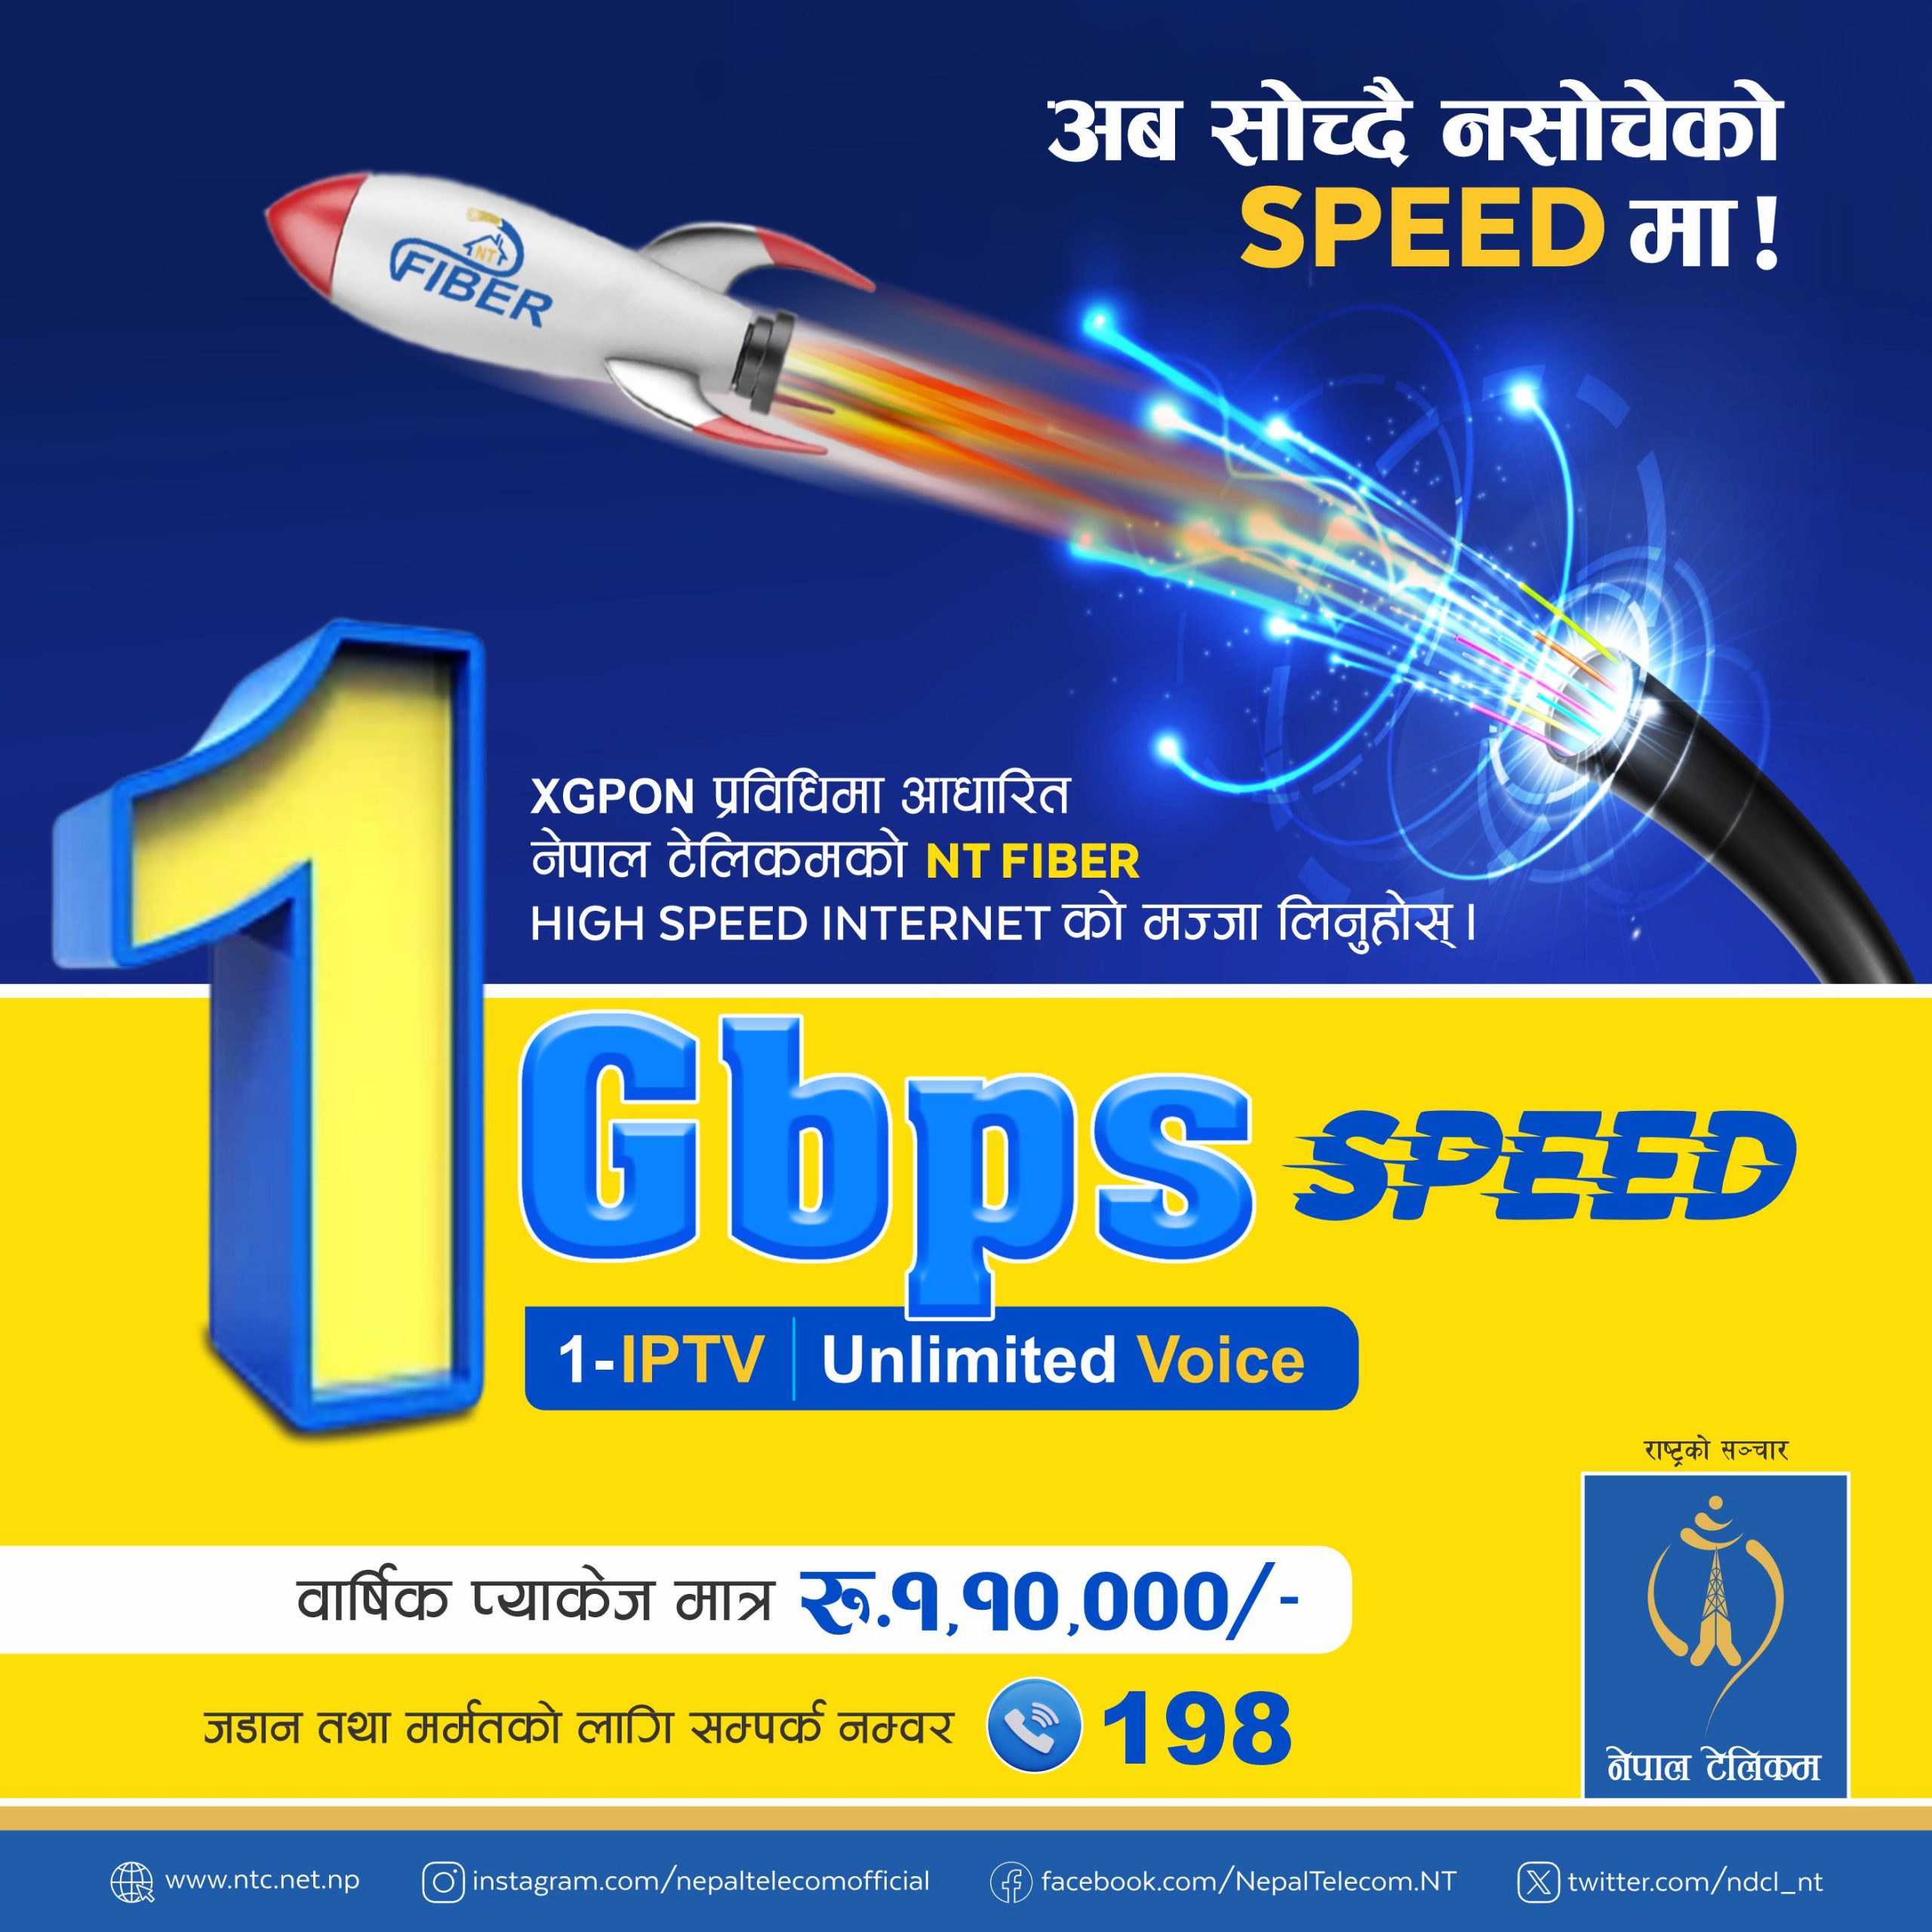 नेपाल टेलिकमले १ जीबीपीएस (१००० एमबीपीएस) सम्म उच्च गति भएको एफटीटीएच इन्टरनेट सेवा प्रारम्भ